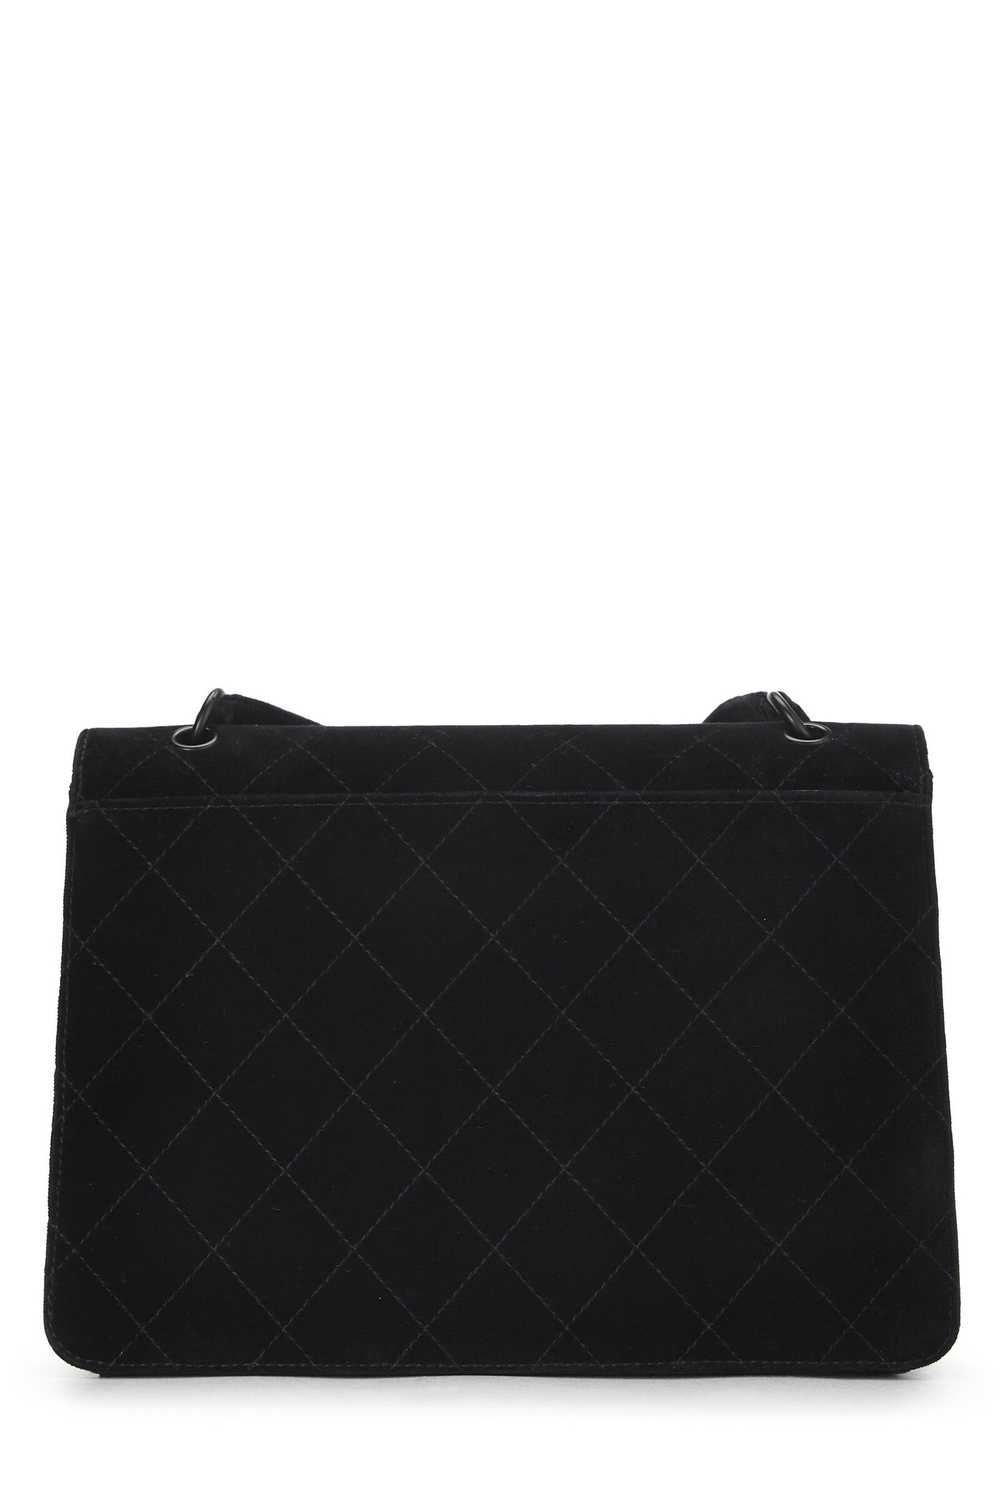 Black Velour Shoulder Bag - image 4